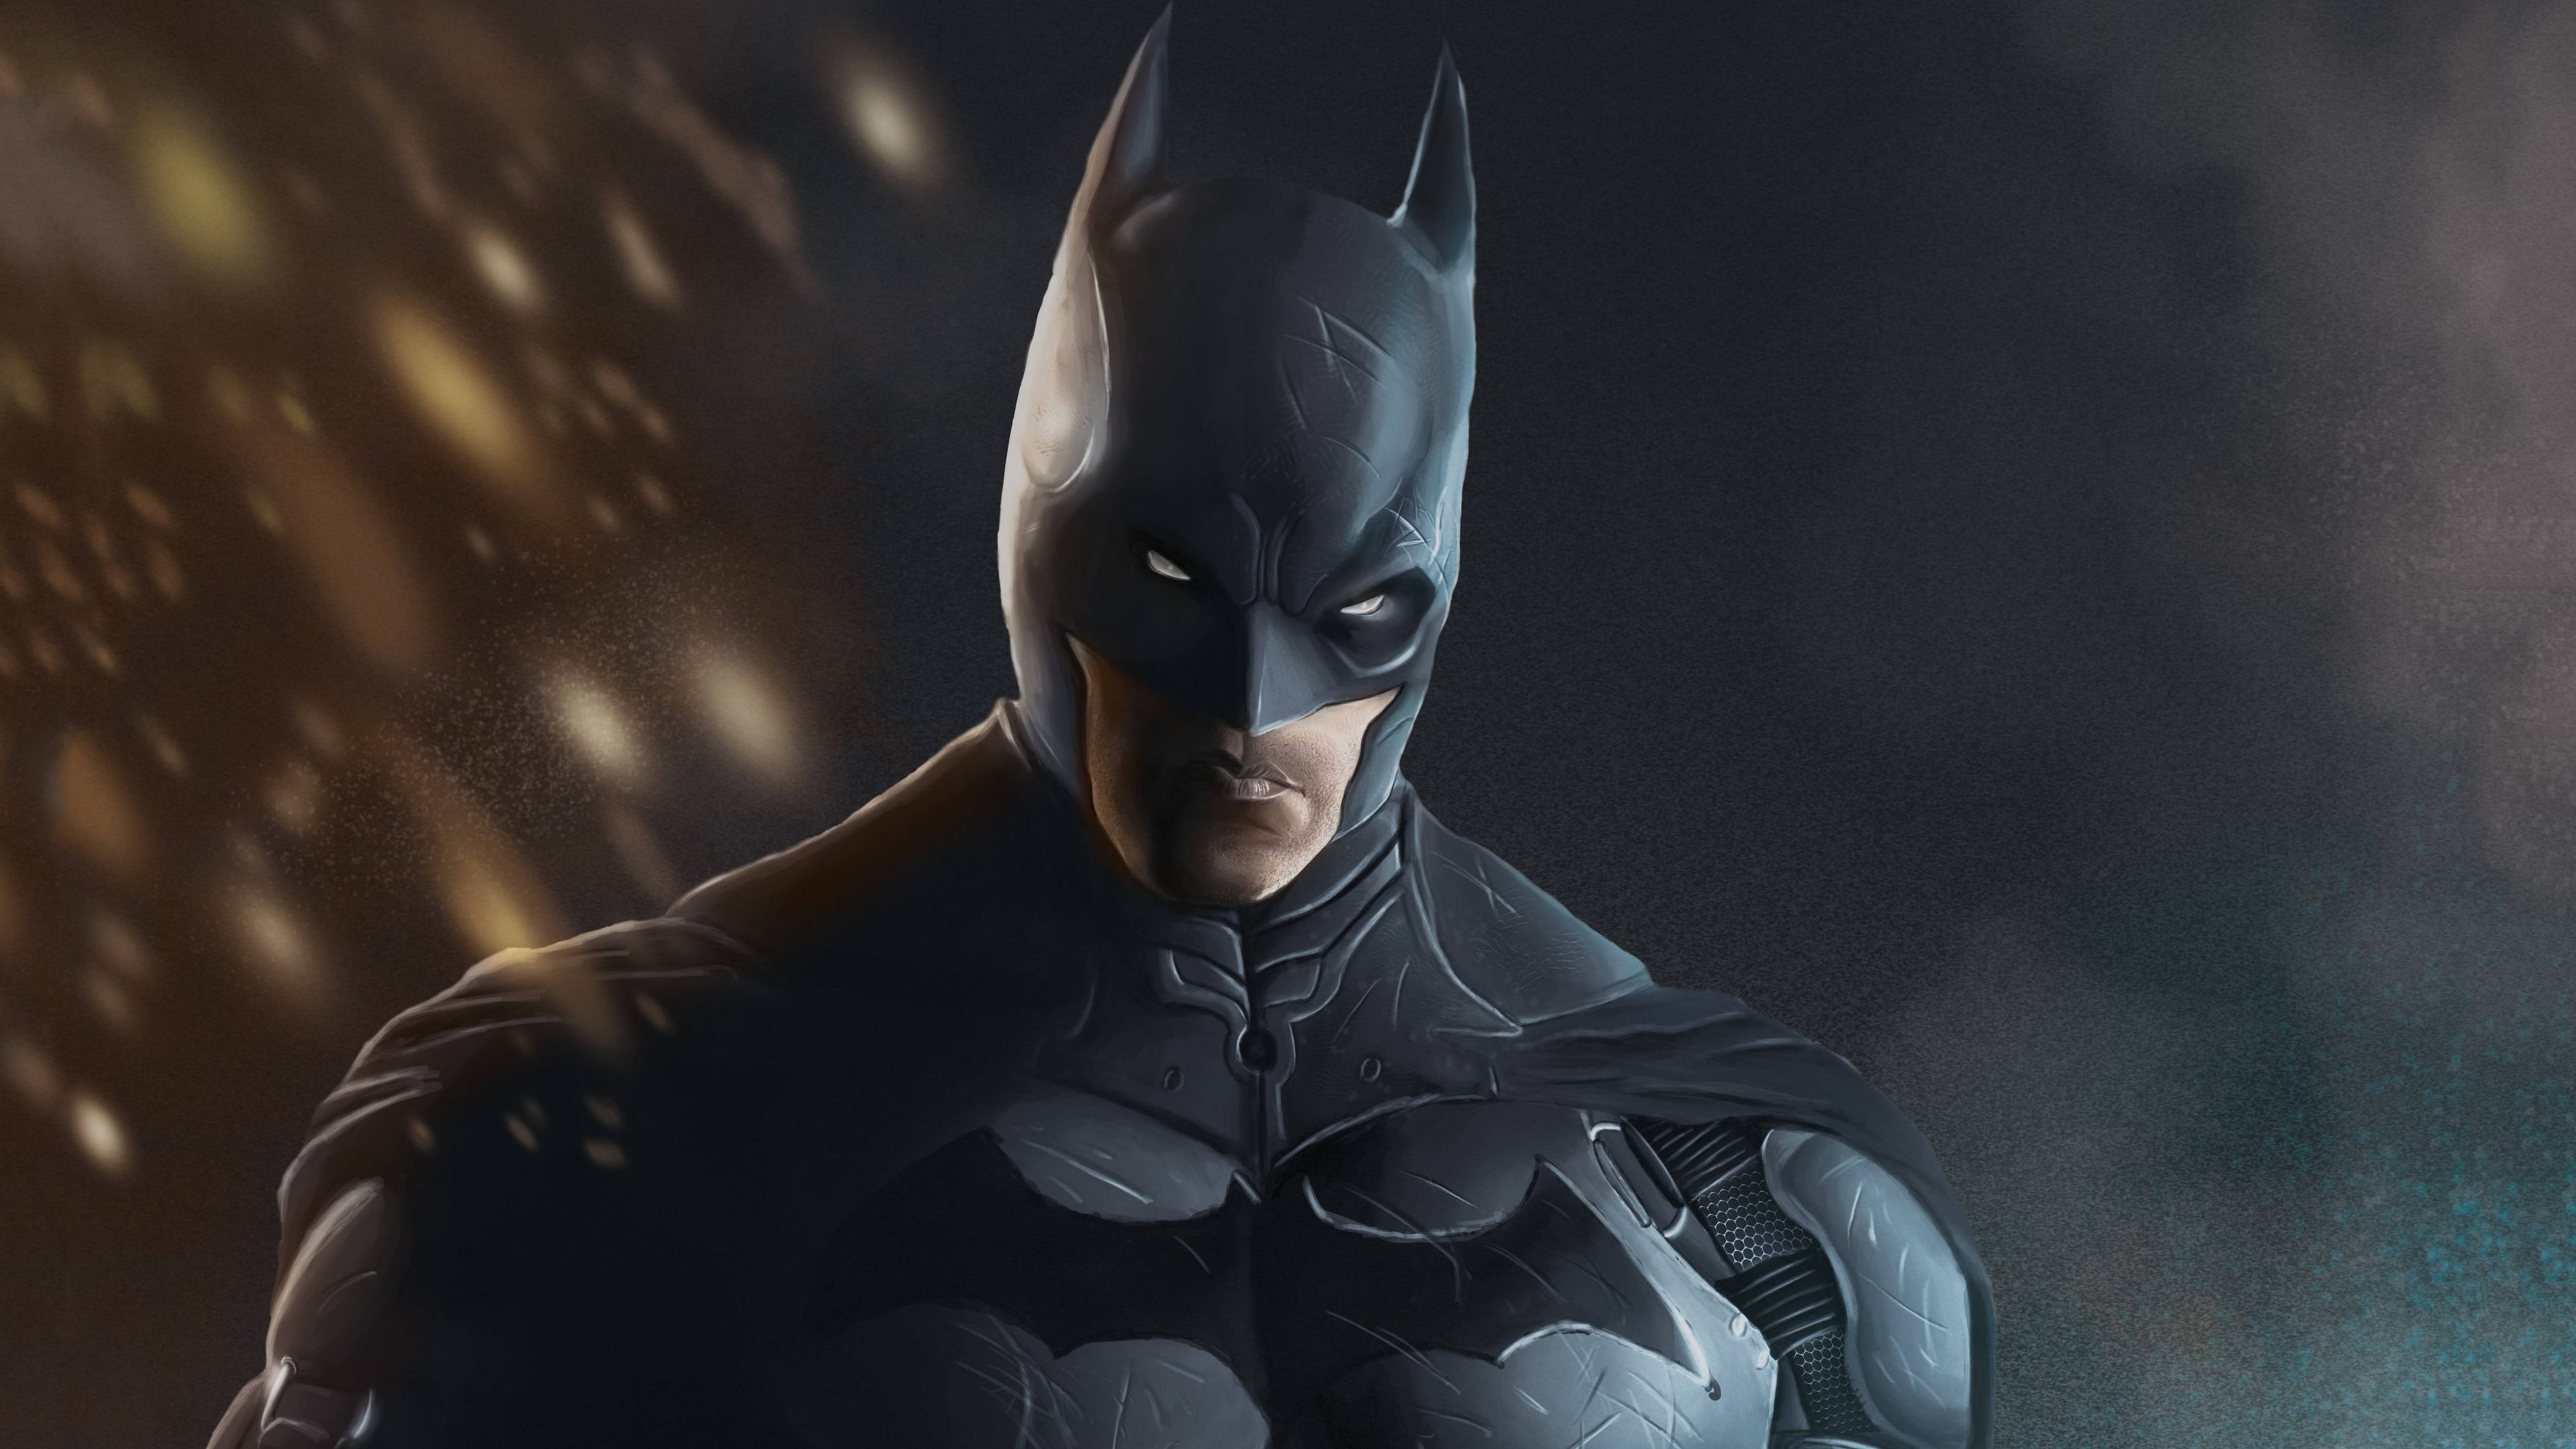 Batman In Bat-suit Arkham City 4k Background